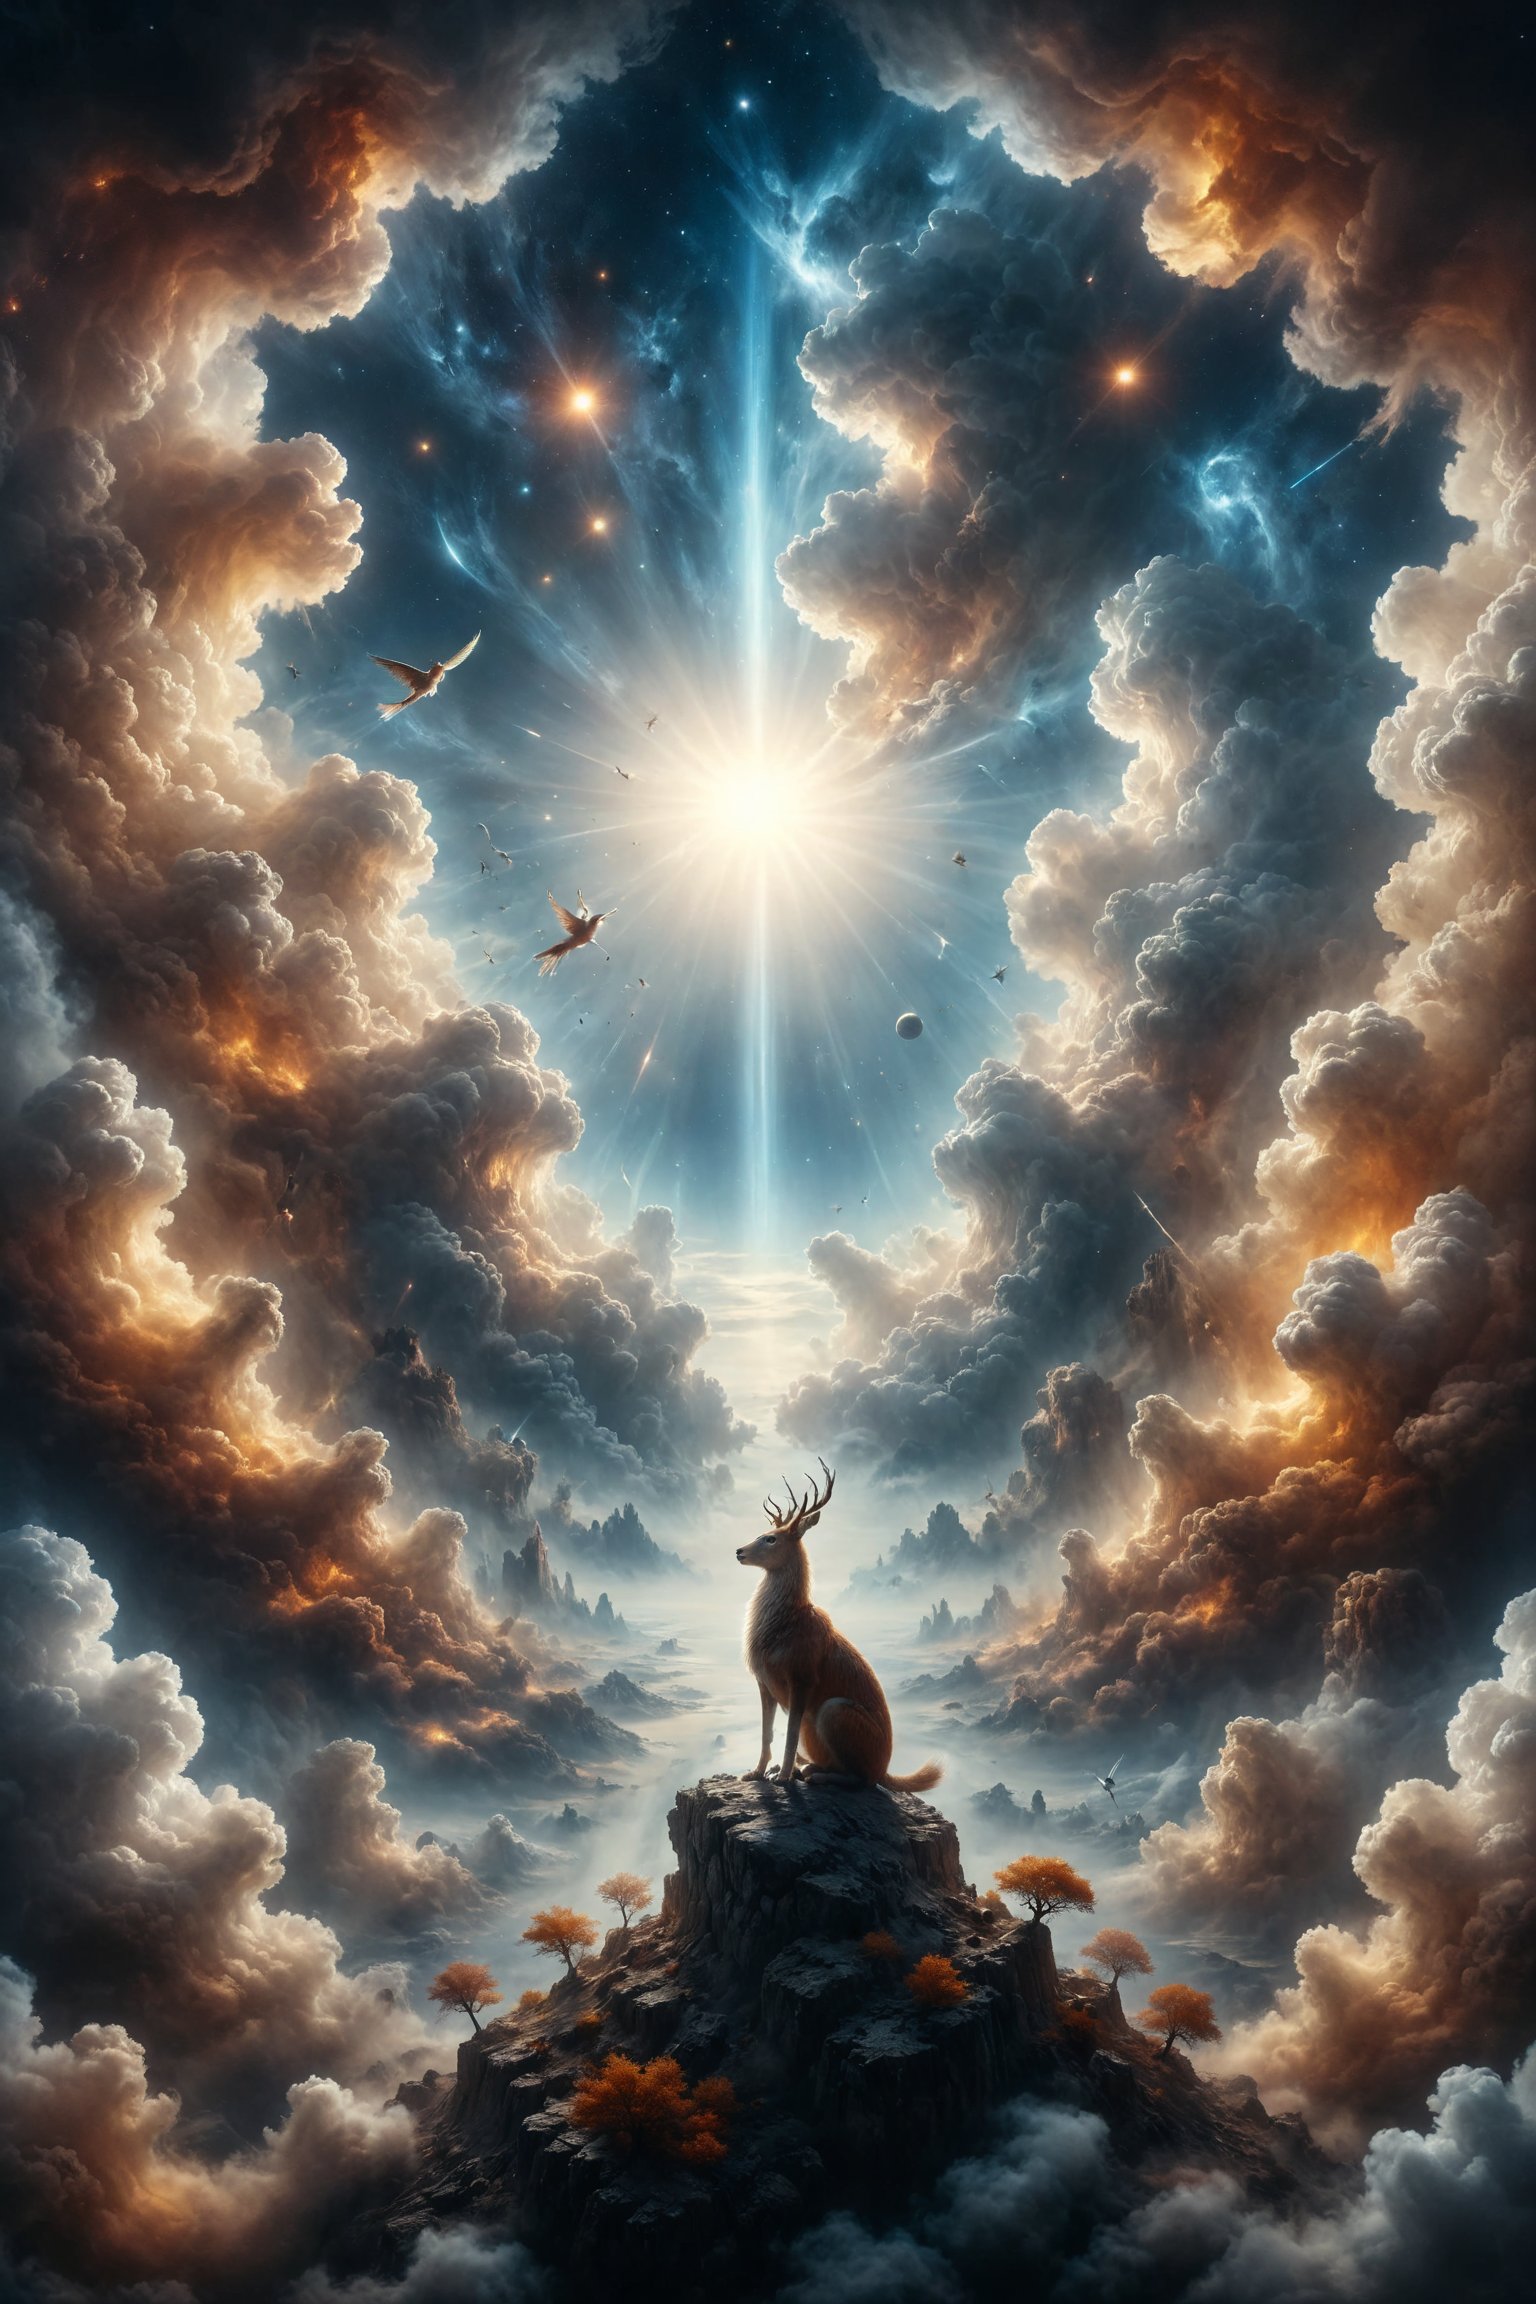 genera una hermosa escena de fantacia, dentro del espacio del cielo, rodeado de nubes etereas, Un fénix resplandeciente que renace de las llamas en el cielo, simbolizando la renovación y el ciclo eterno de la vida.